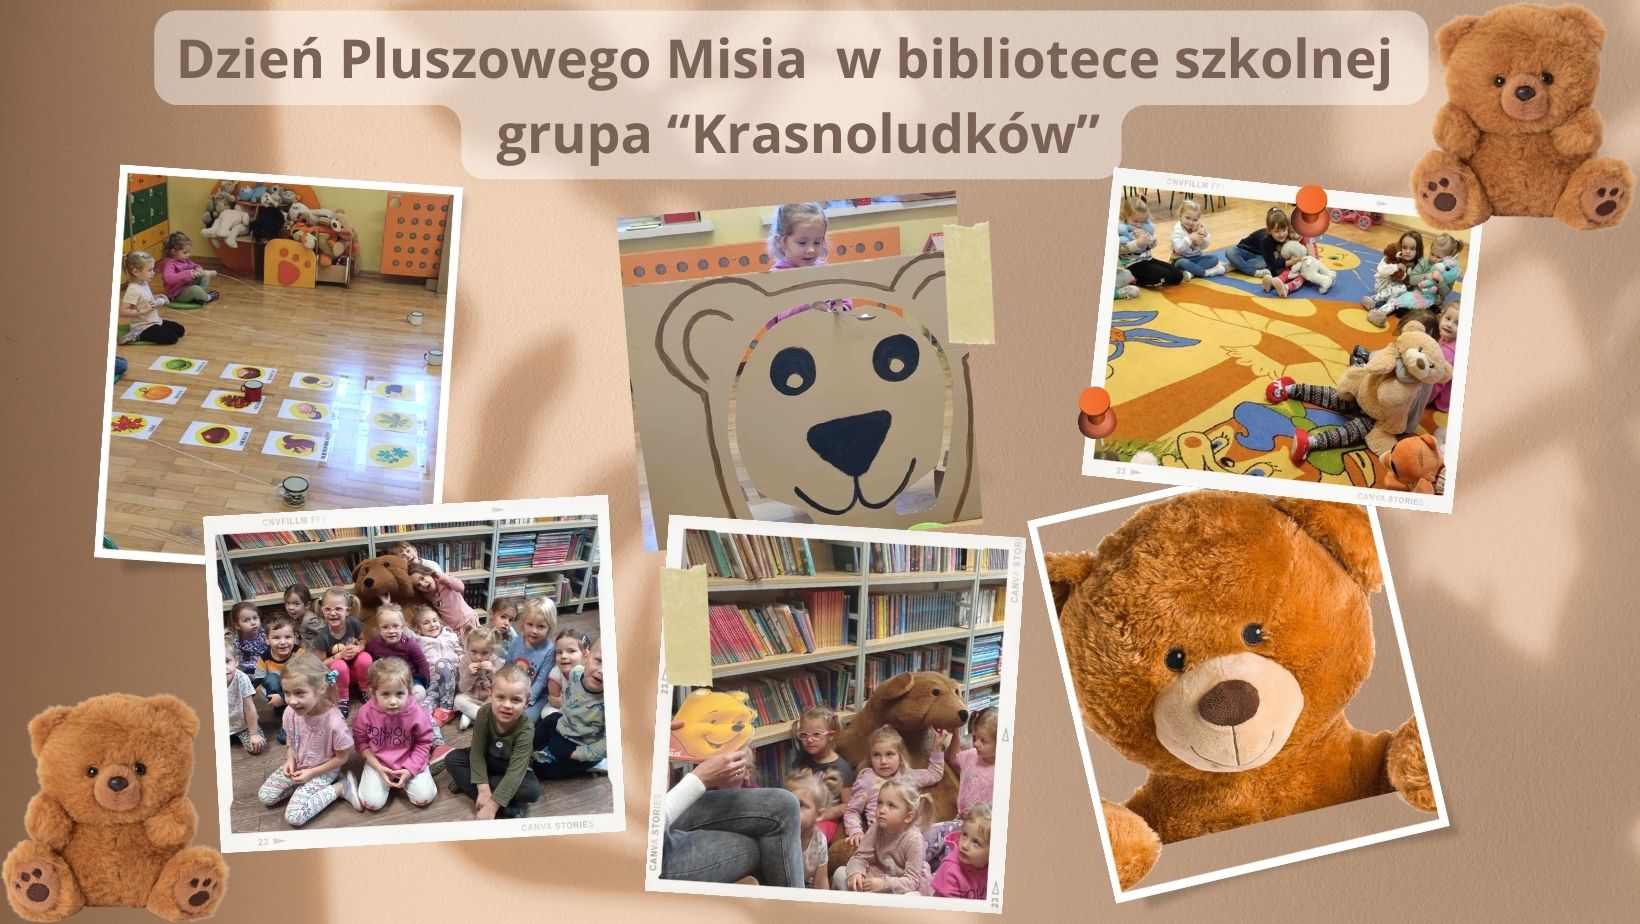 Dzień Pluszowego Misia 🐻🧸 w bibliotece szkolnej - gr. Krasnoludków